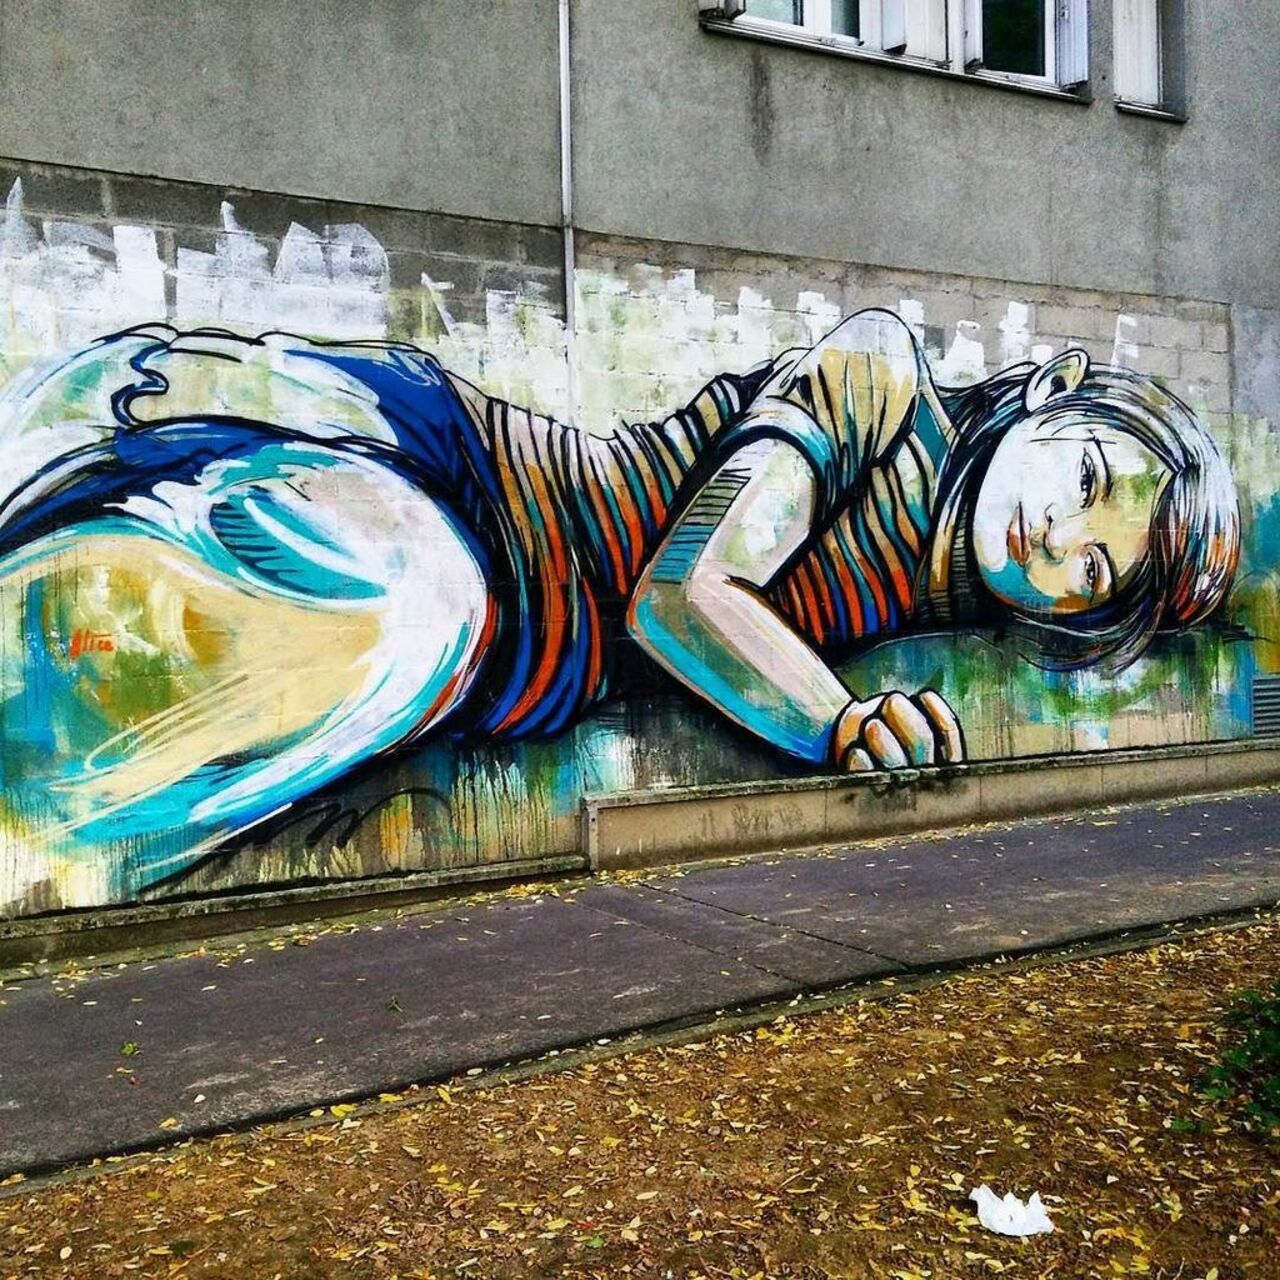 RT @StArtEverywhere: By @alicepasquini #alicepasquini 
#streetart #streetartparis #parisstreetart #parisgraffiti #graffiti #graffitiart … https://t.co/ebxSFTdtRK